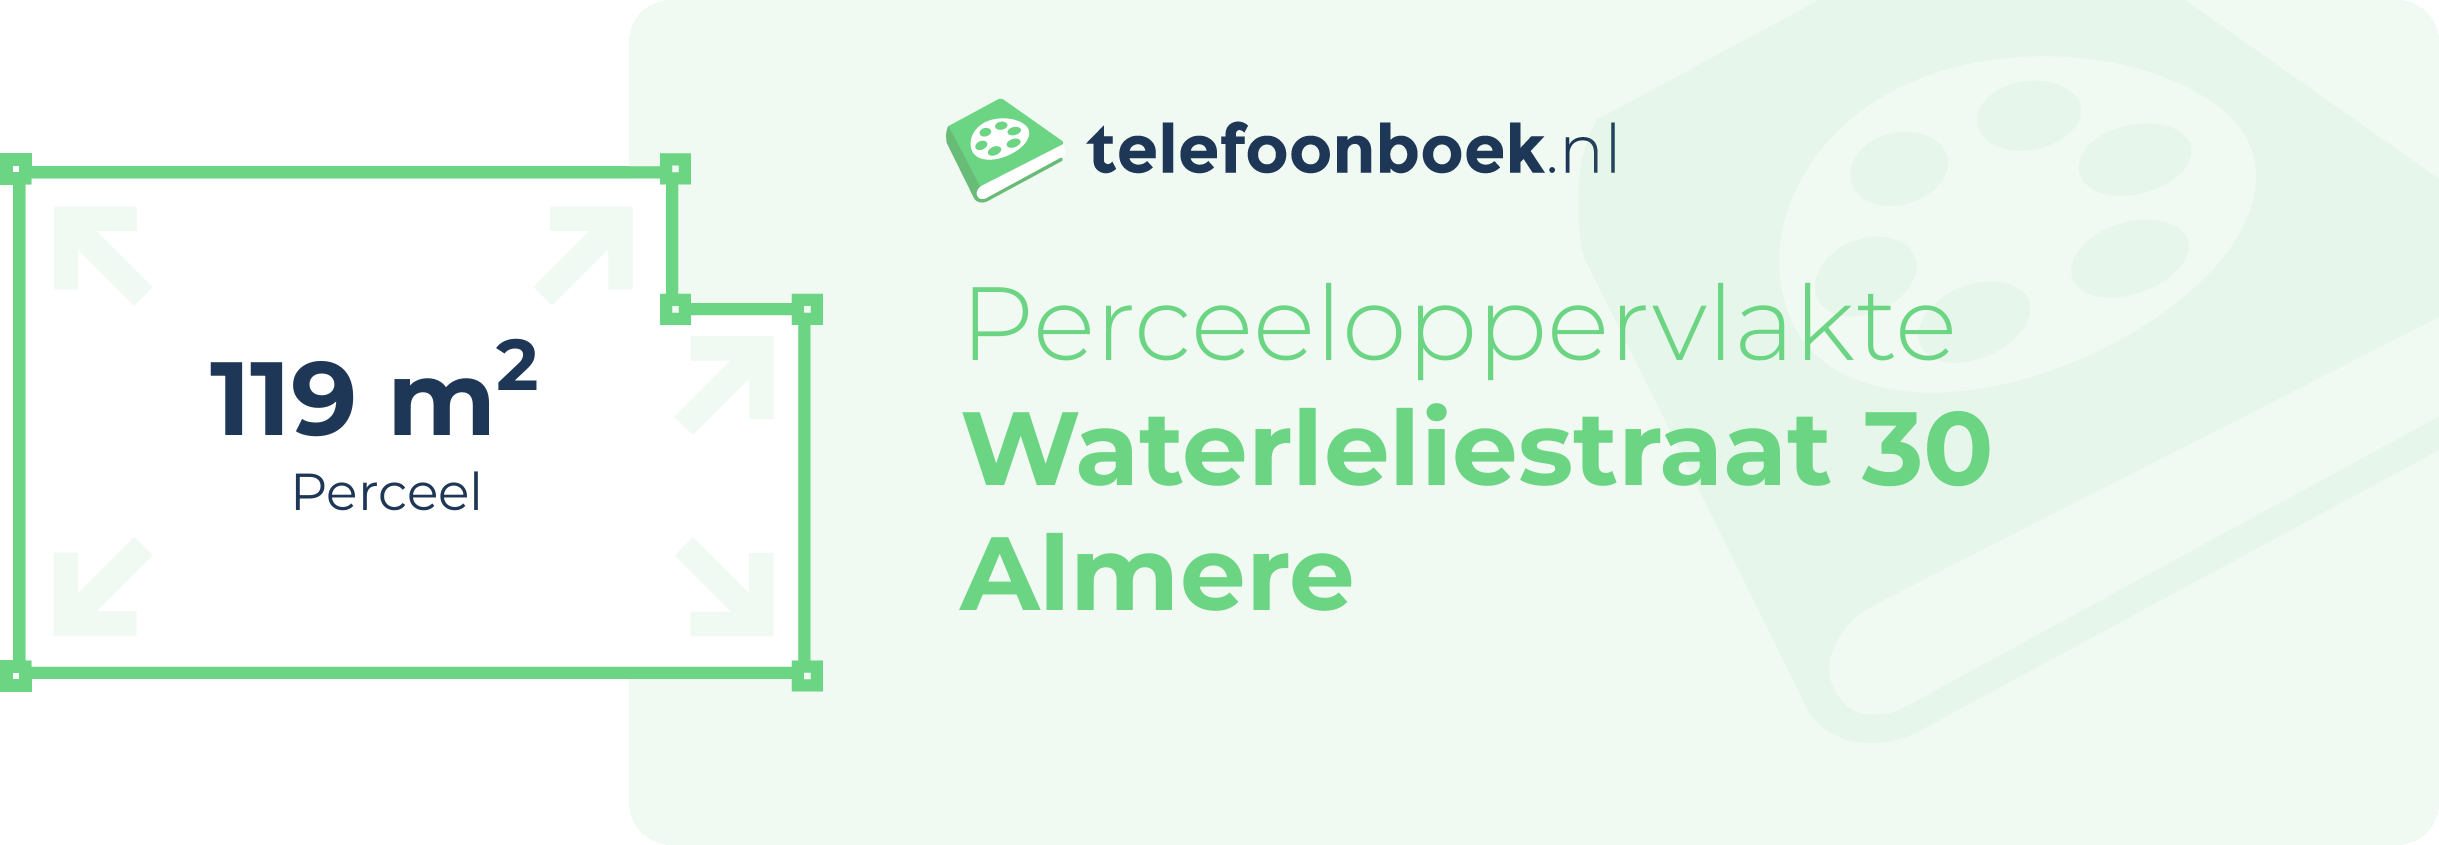 Perceeloppervlakte Waterleliestraat 30 Almere